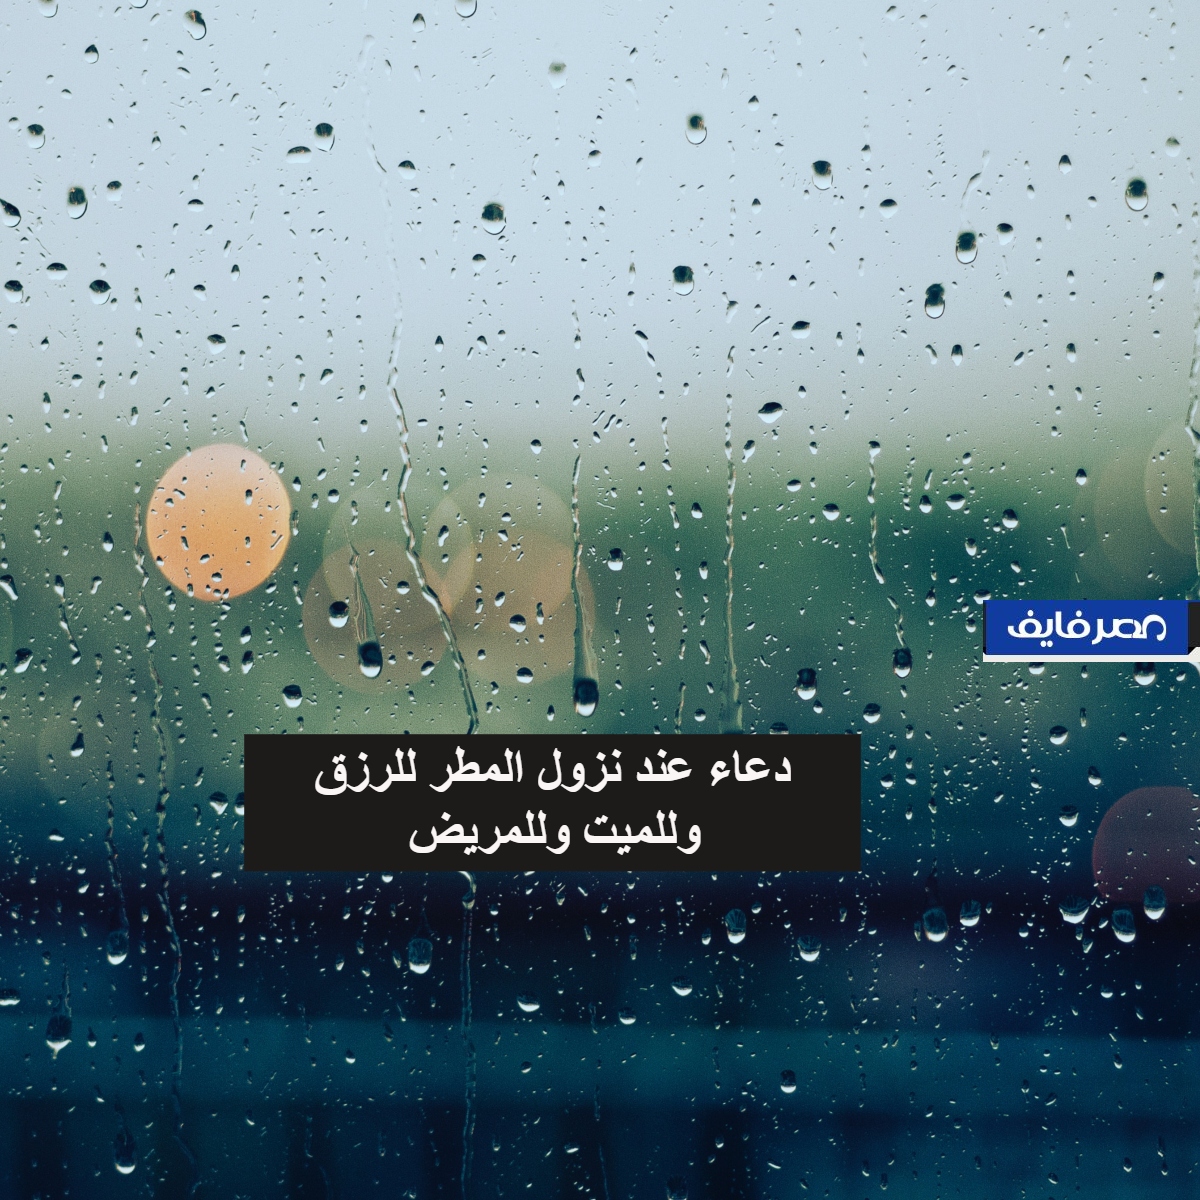 دعاء المطر | أدعية مستحبة عند نزول المطر للرزق وللميت وللمريض